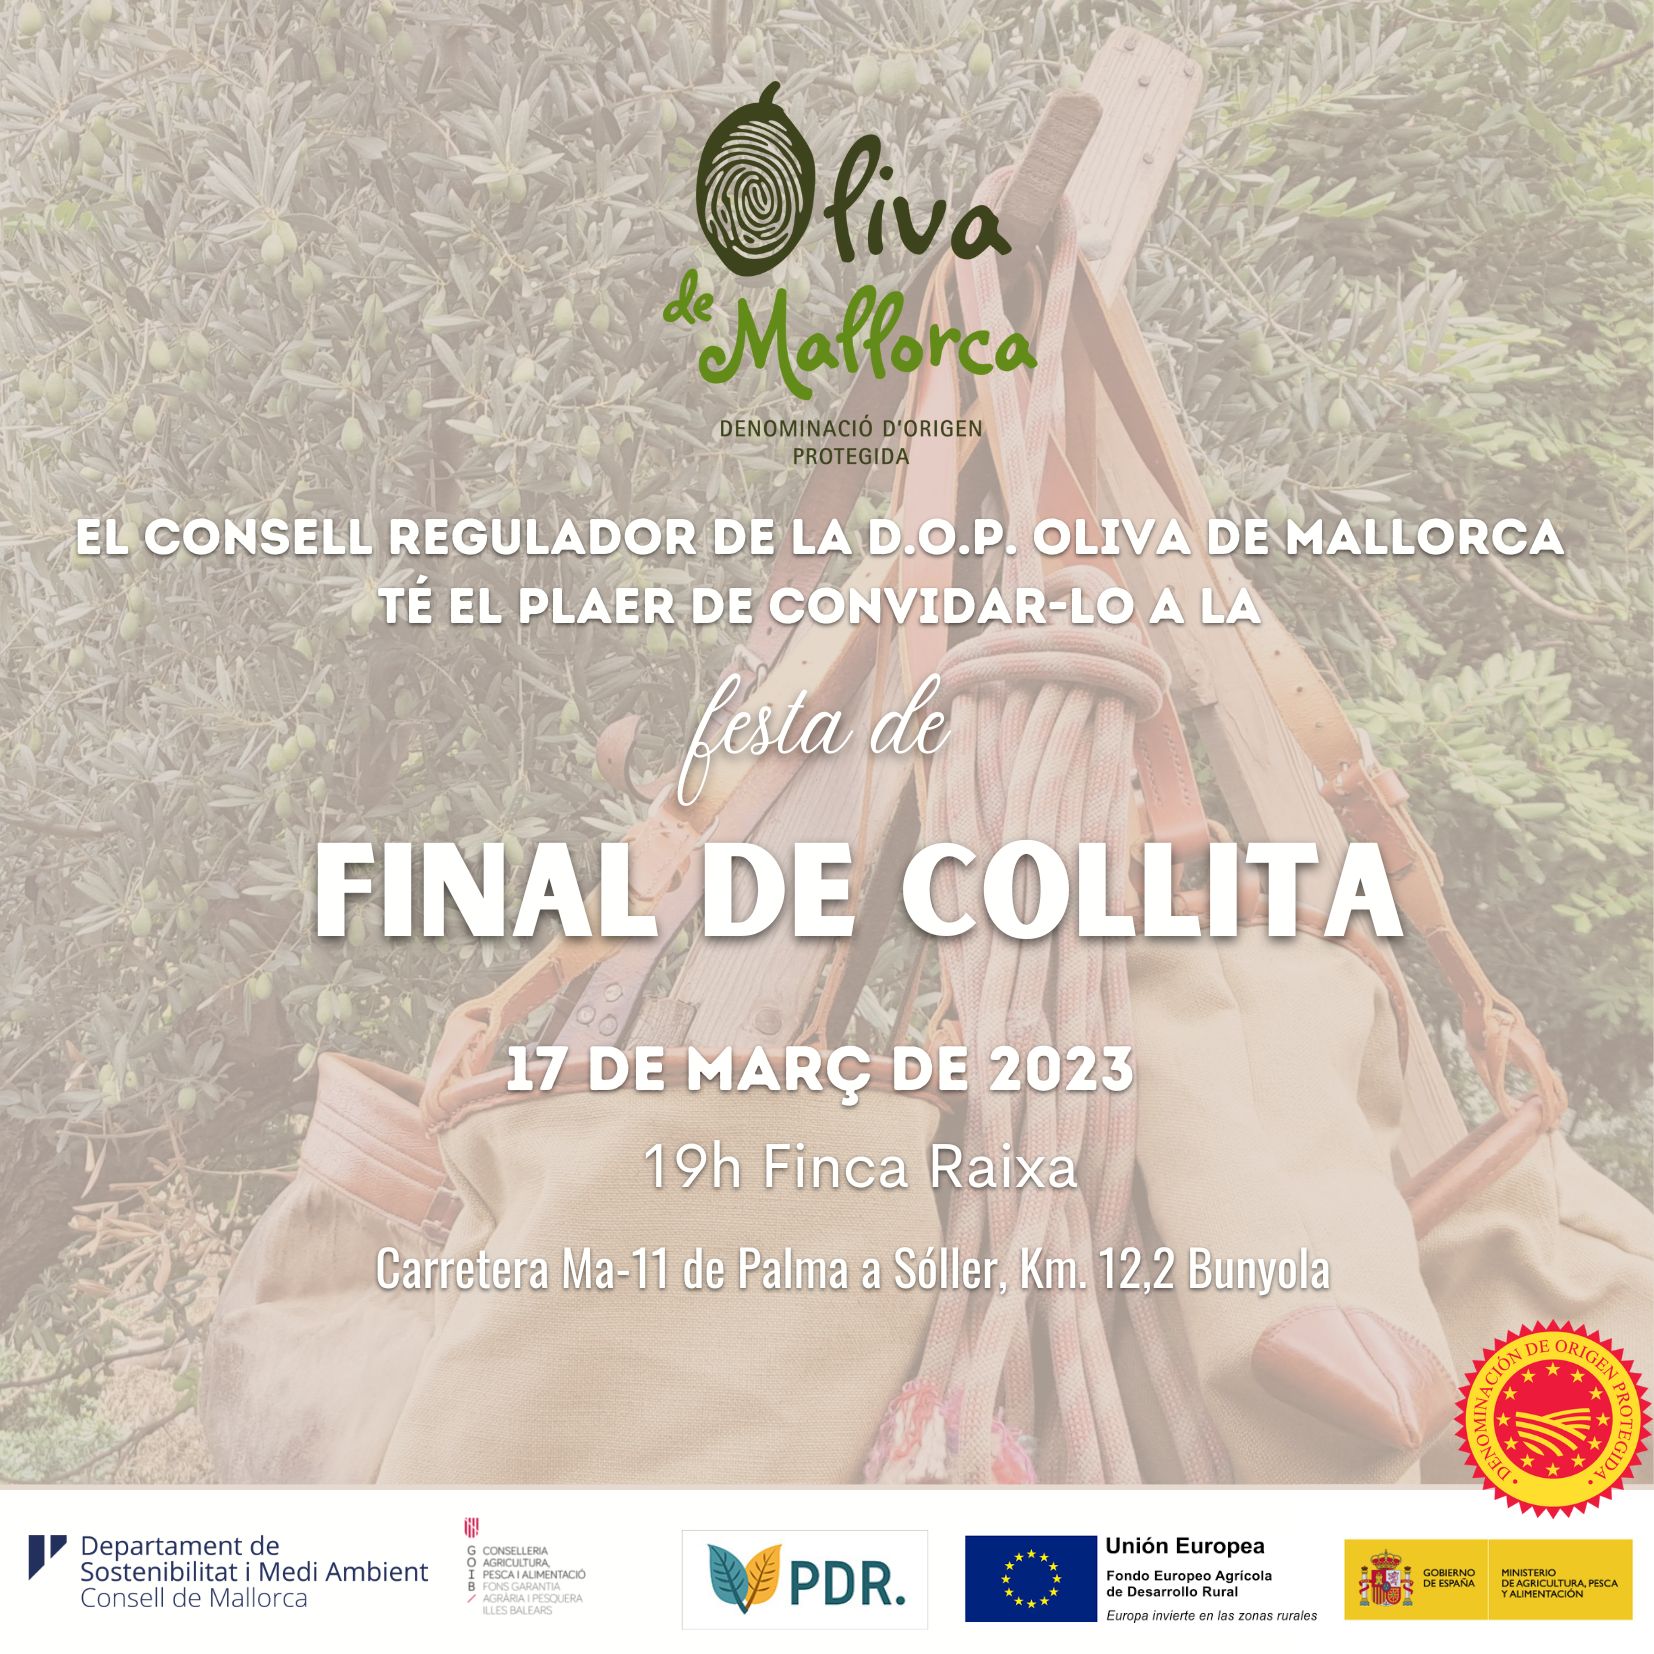 Festa de final de la collita oliva de Mallorca 2023 - Notícies - Illes Balears - Productes agroalimentaris, denominacions d'origen i gastronomia balear